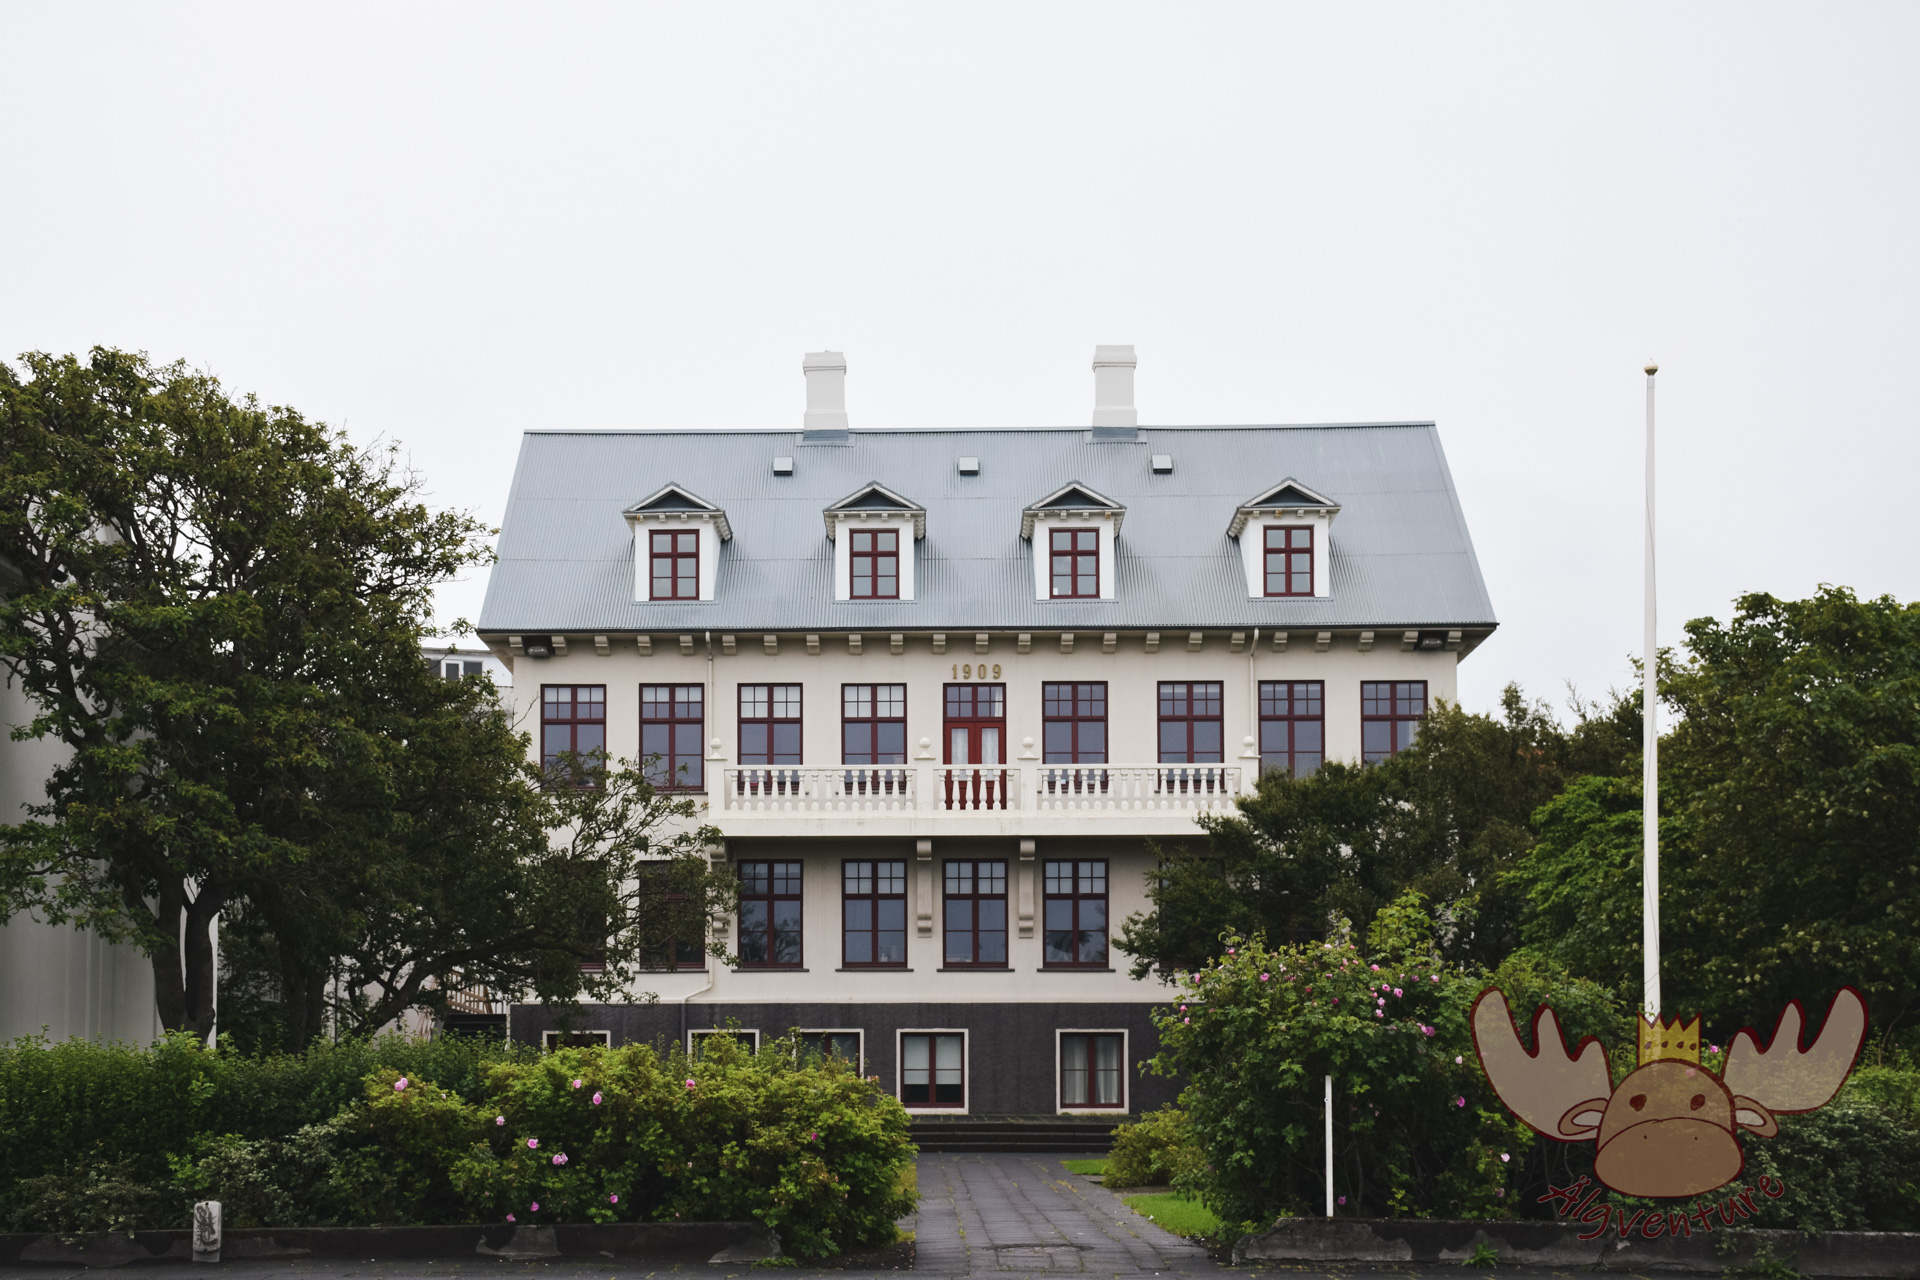 Reykjavik | Das wunderschöne Gebäude der ersten Sekundarschule für Frauen "Kvennaskólinn" in Island. - The beautiful building of the first secondary school for women "Kvennaskólinn" in Iceland.